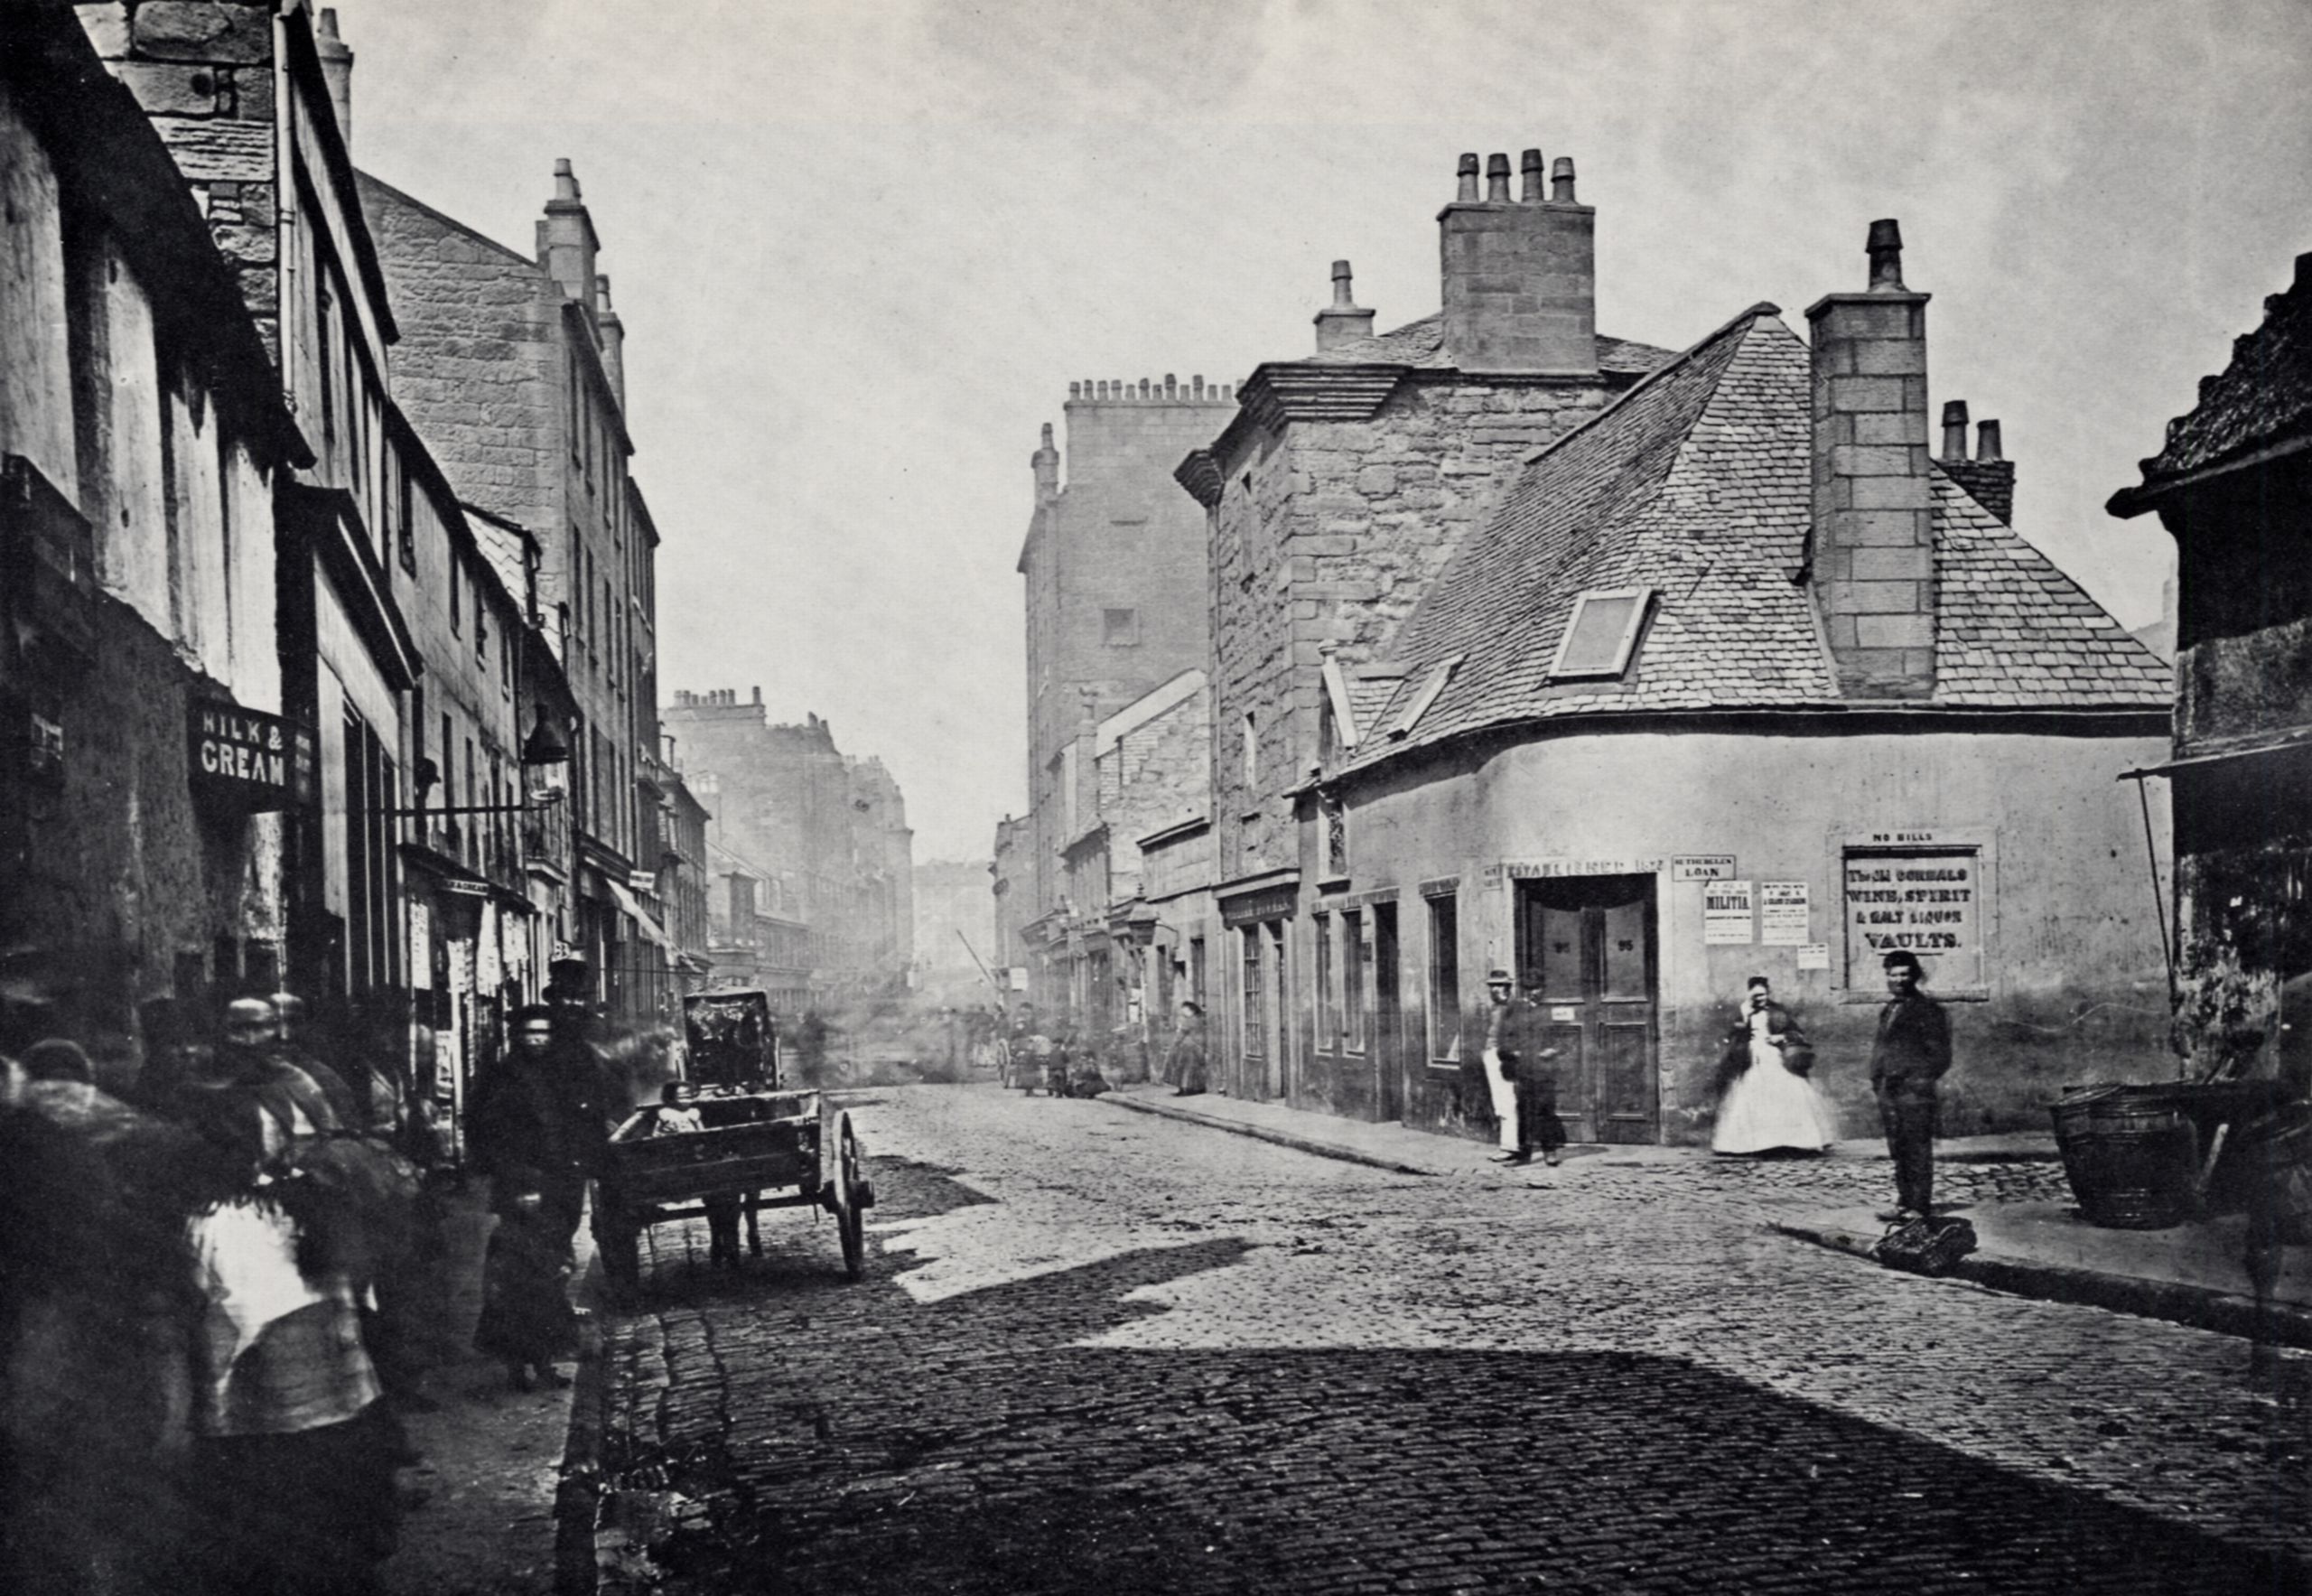 19世纪英国老照片图片